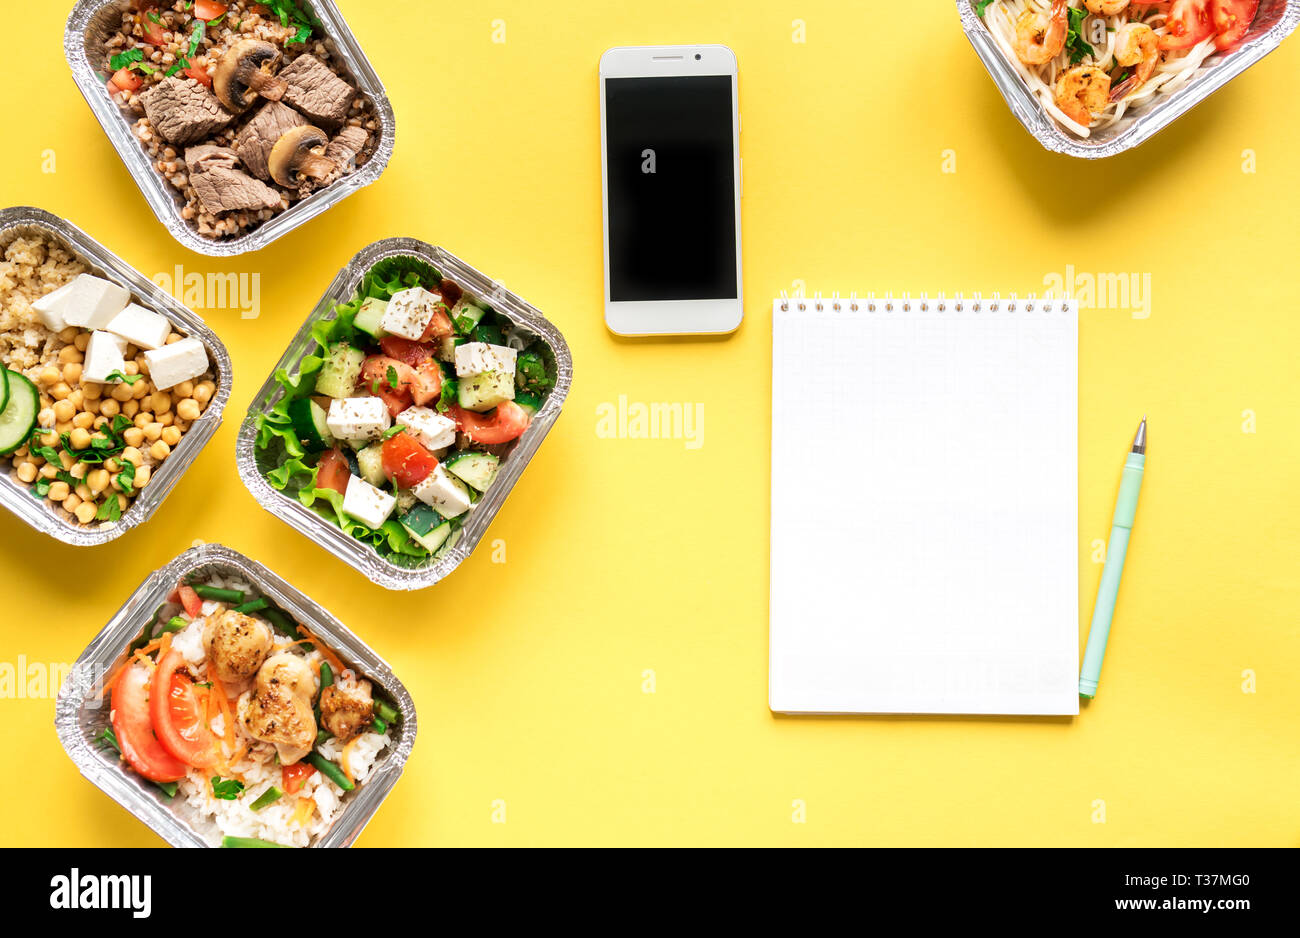 Gesunde Mahlzeiten in Folie Boxen und Smartphone auf Gelb, Ansicht von oben, flach. Gesundes Essen Lieferung Konzept. Fitness Ernährung Ernährung, kopieren. Stockfoto